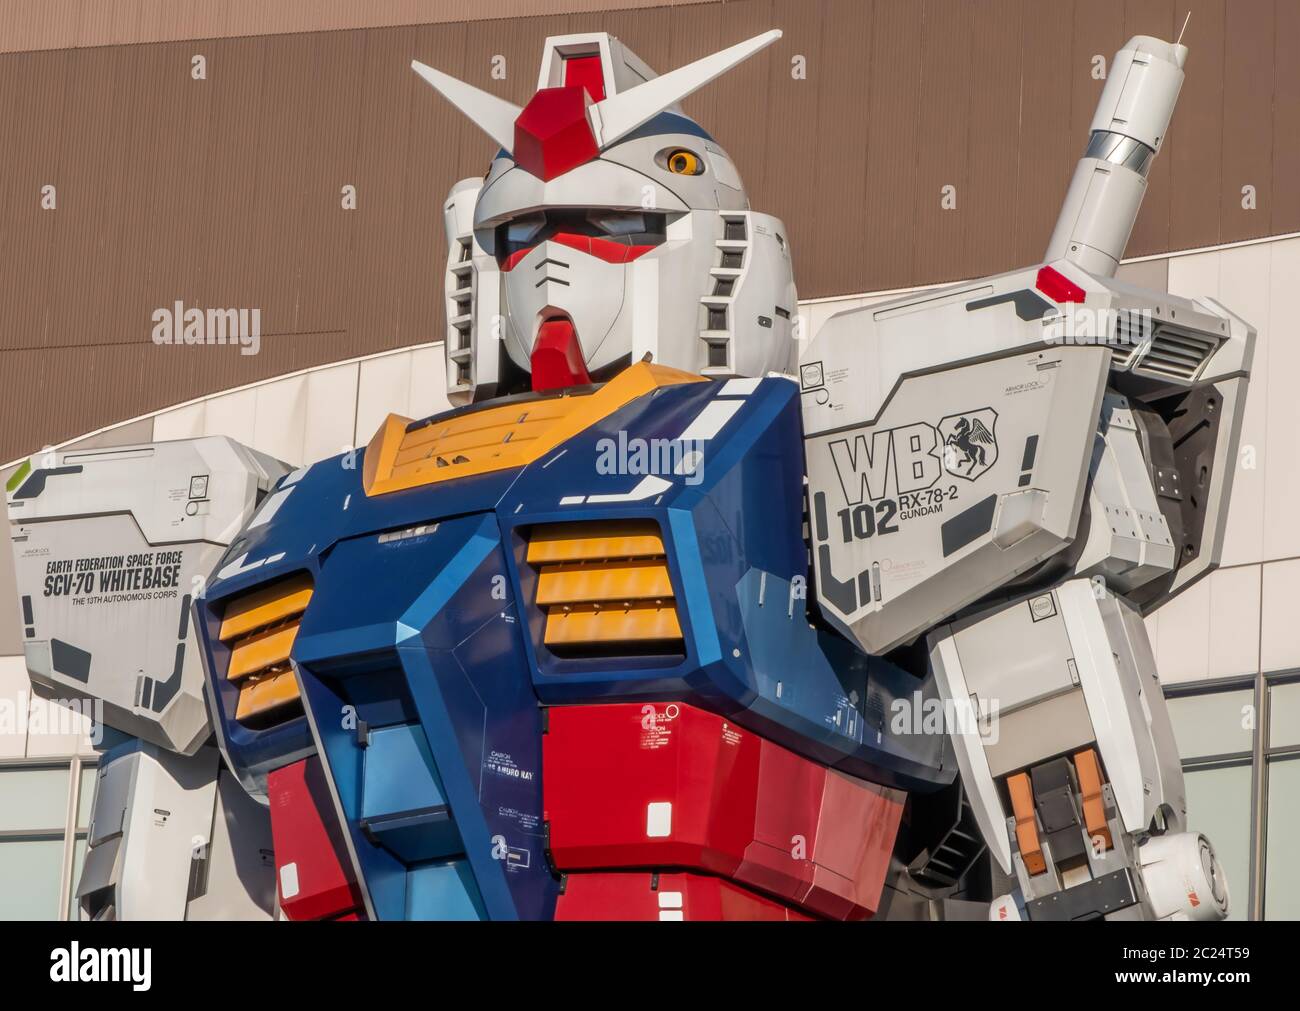 Statua di Gundam RX78 di dimensioni reali a Odaiba, Tokyo, Giappone Foto Stock